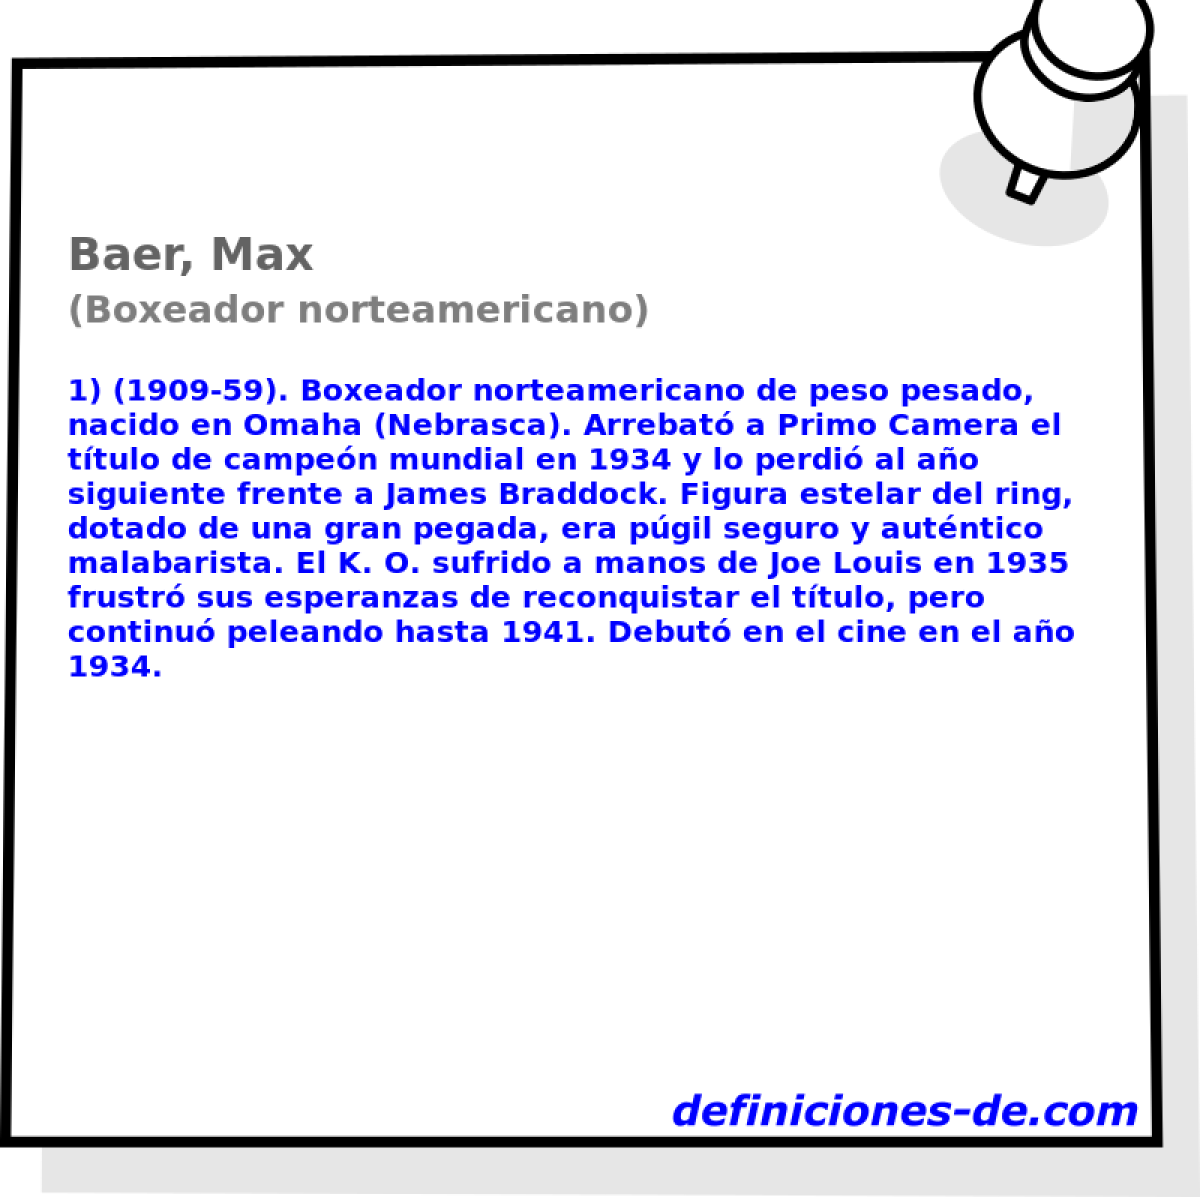 Baer, Max (Boxeador norteamericano)